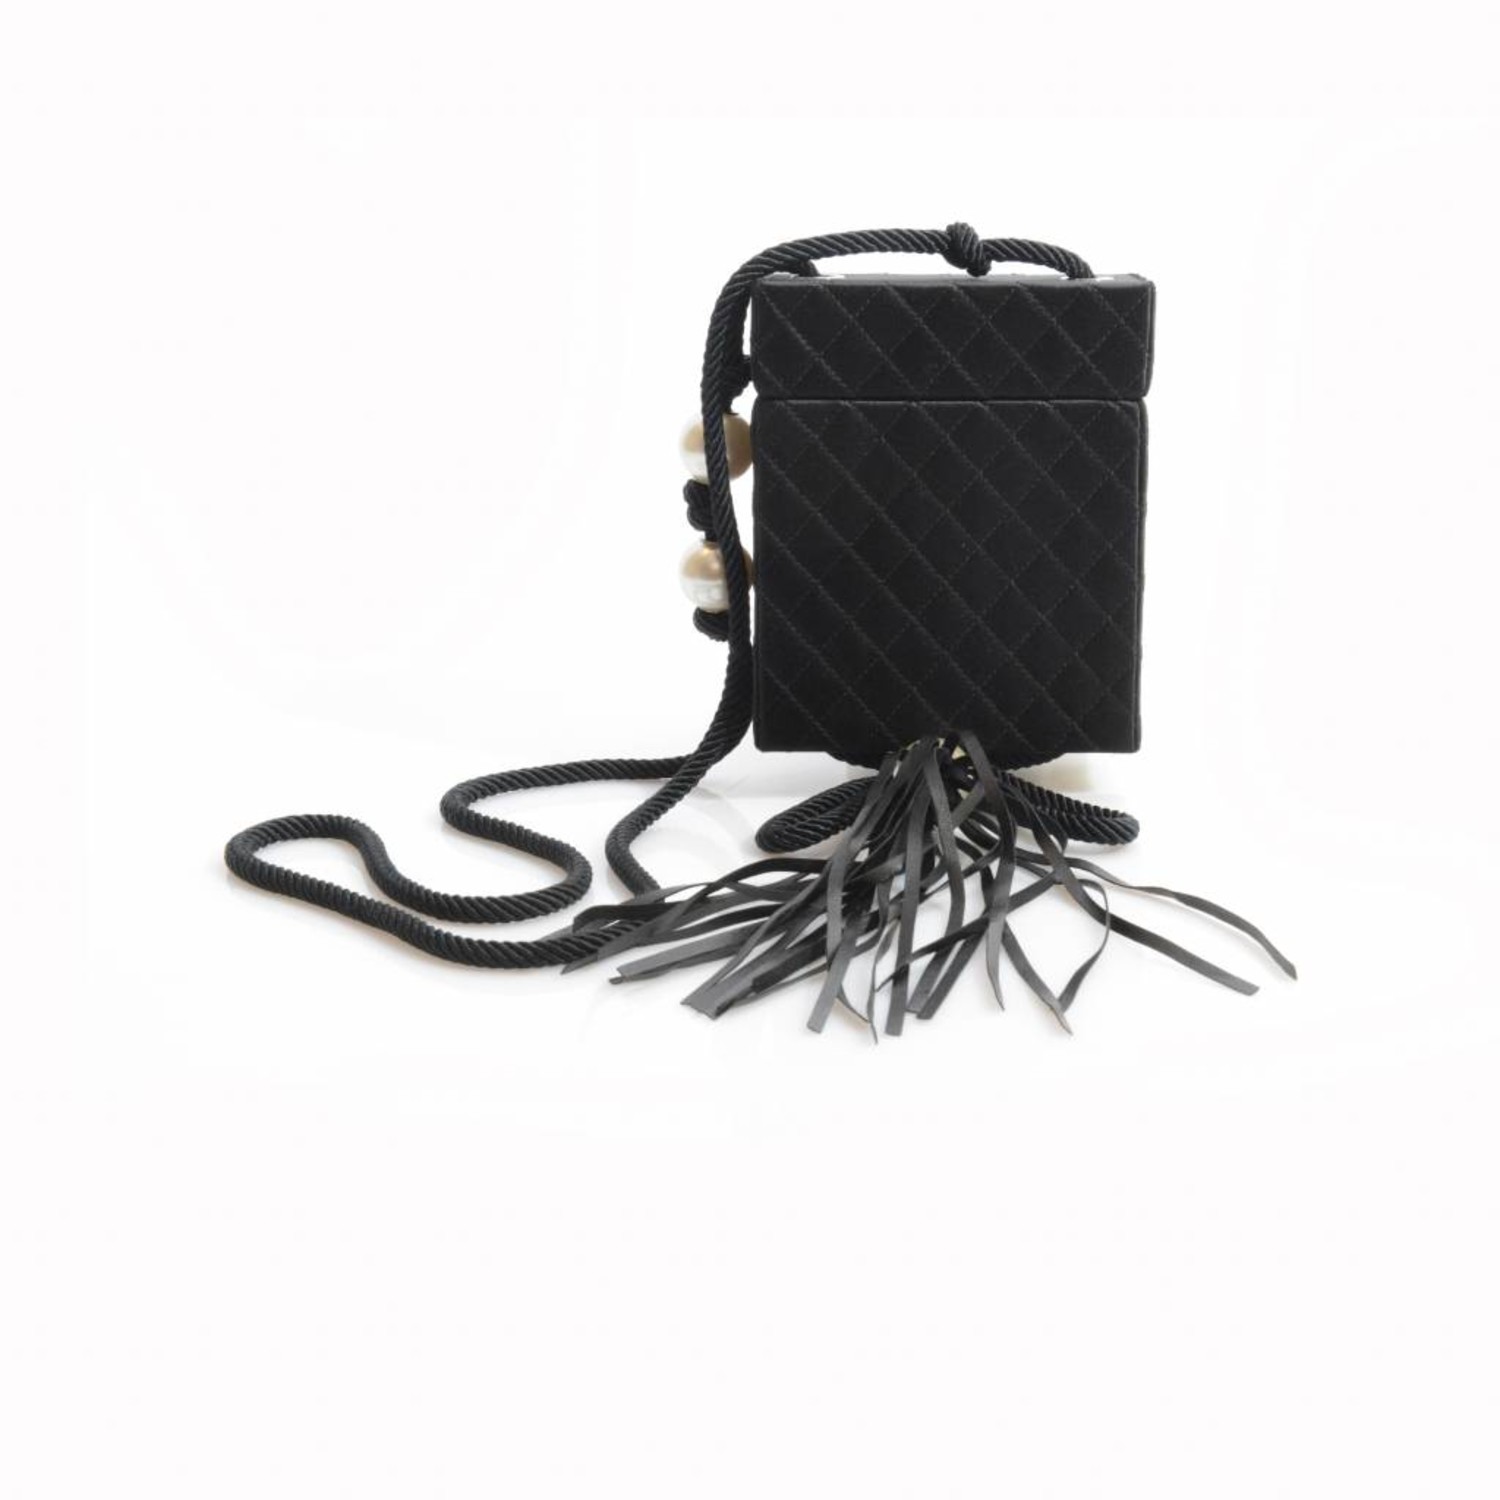 Vintage Chanel Quilted Shoulder Bag